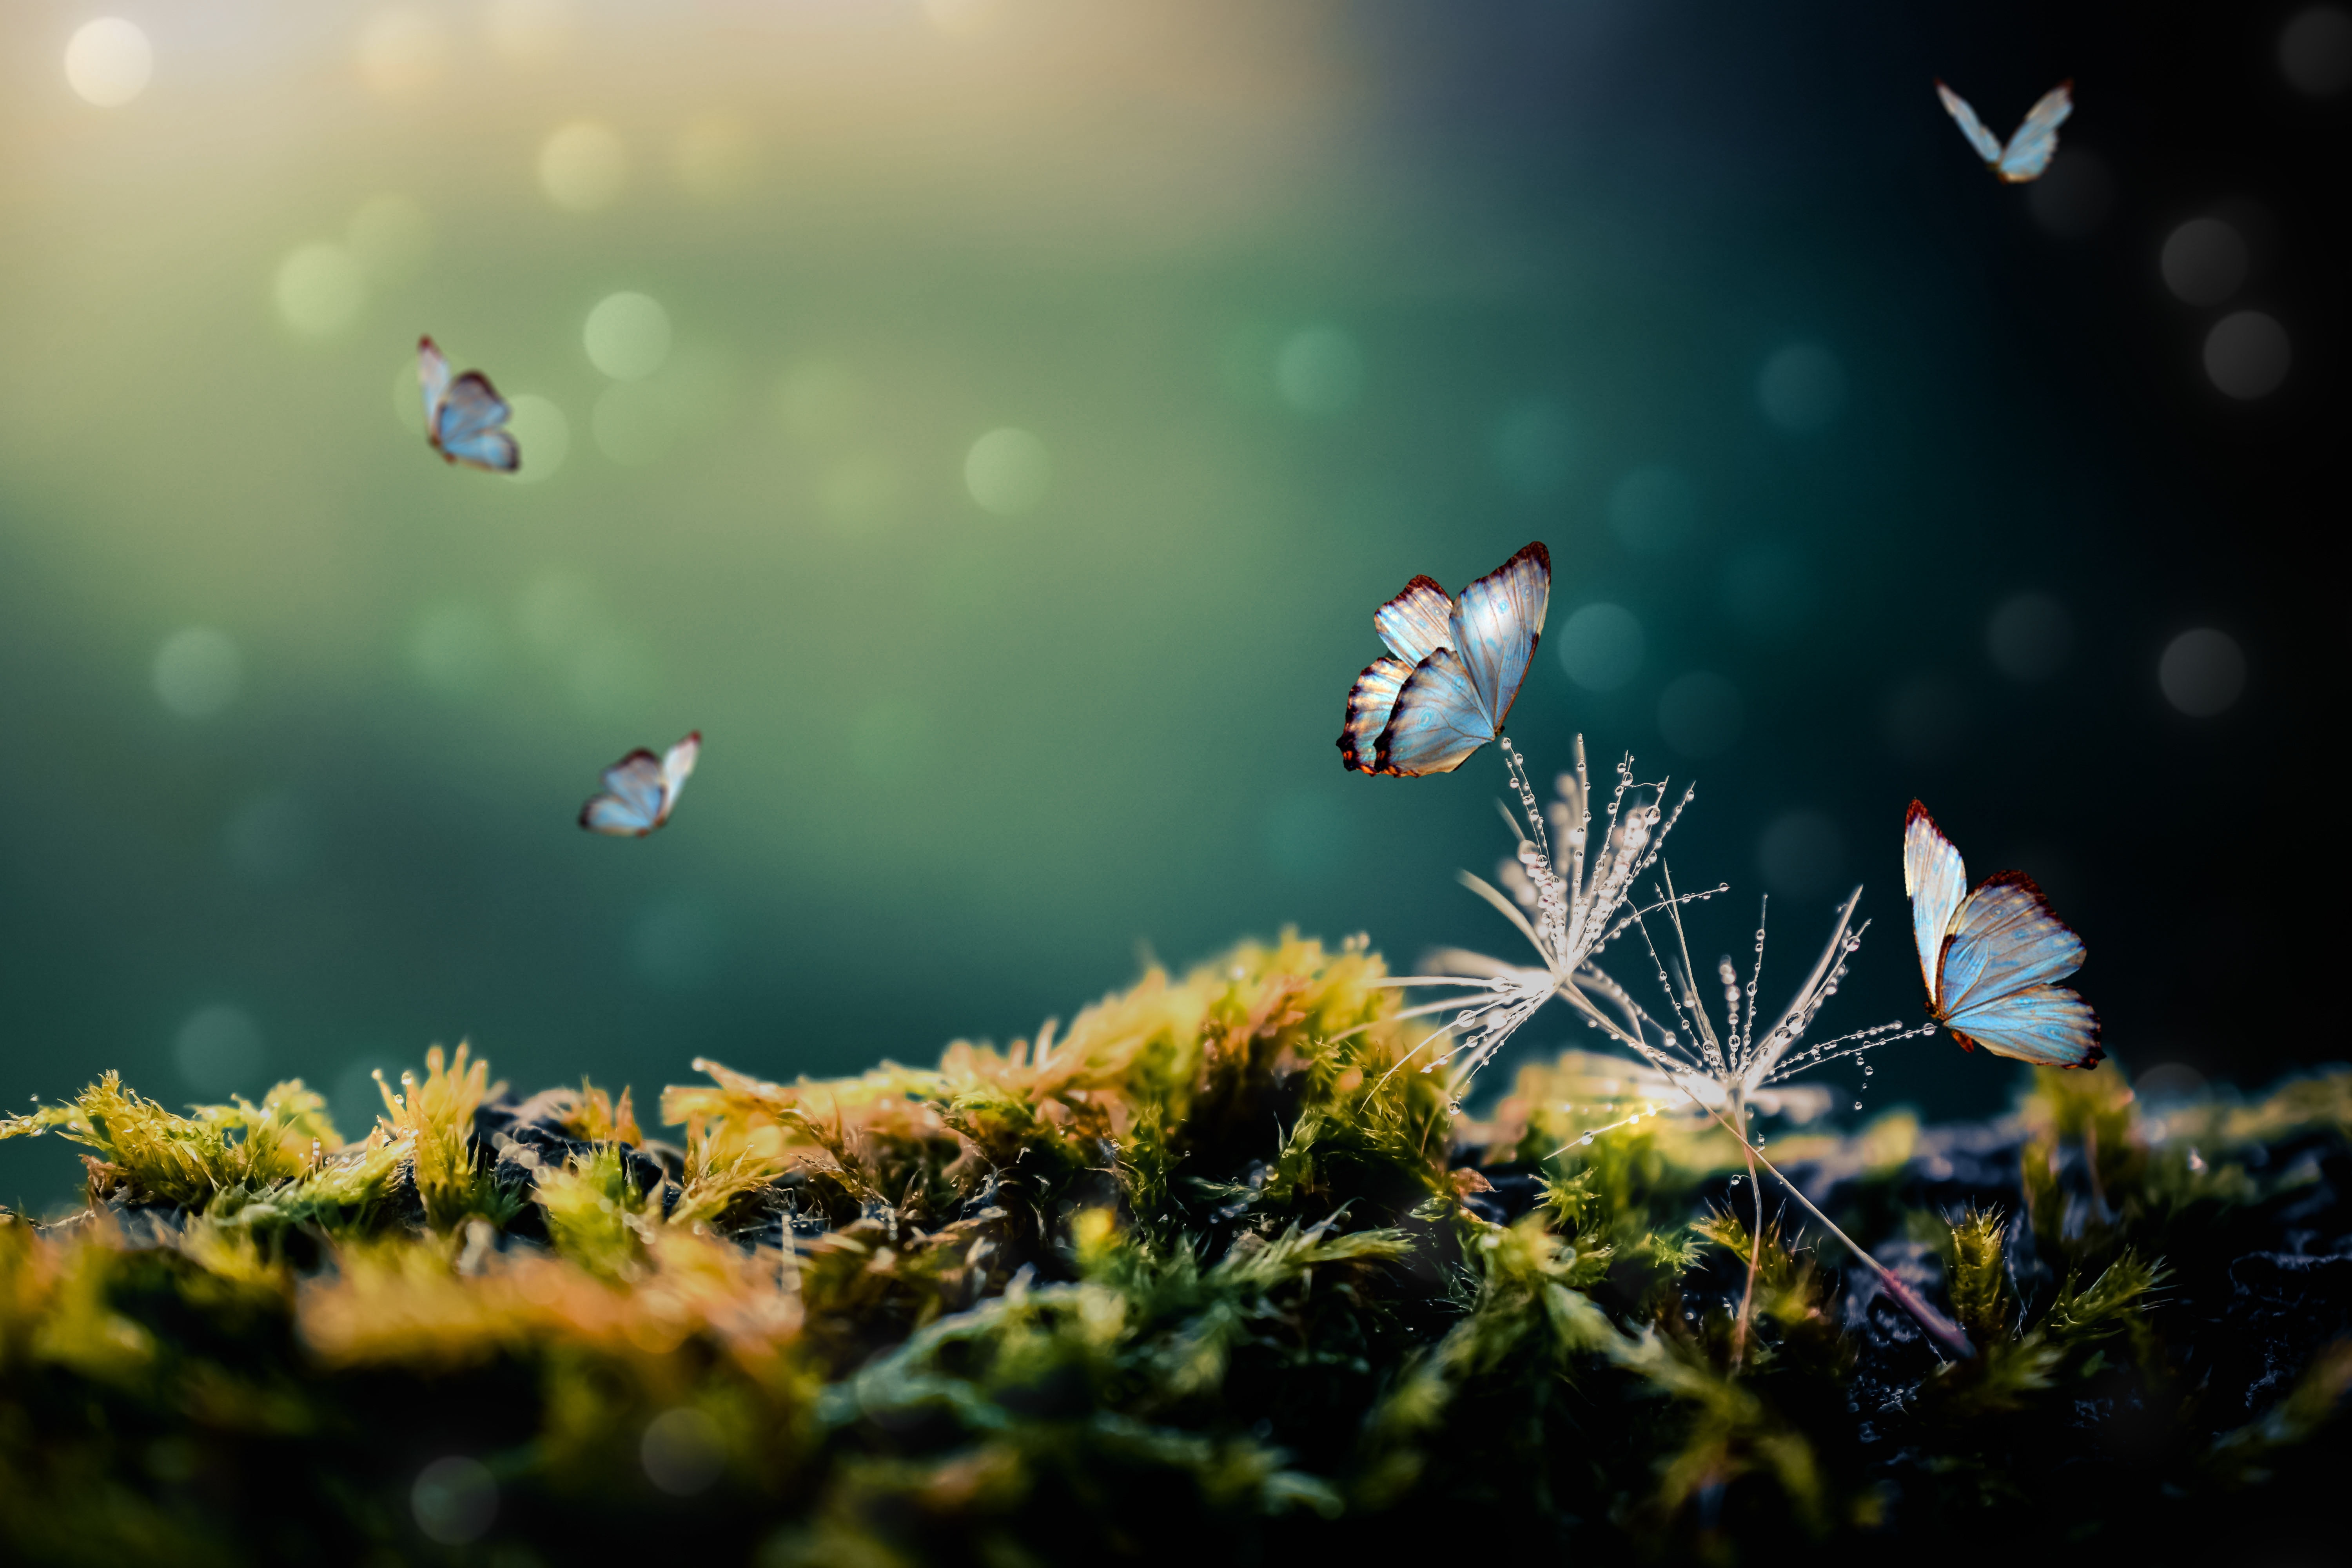 HD wallpaper, Moss, White Butterflies, Blur Background, Selective Focus, 5K, Mystical Forest